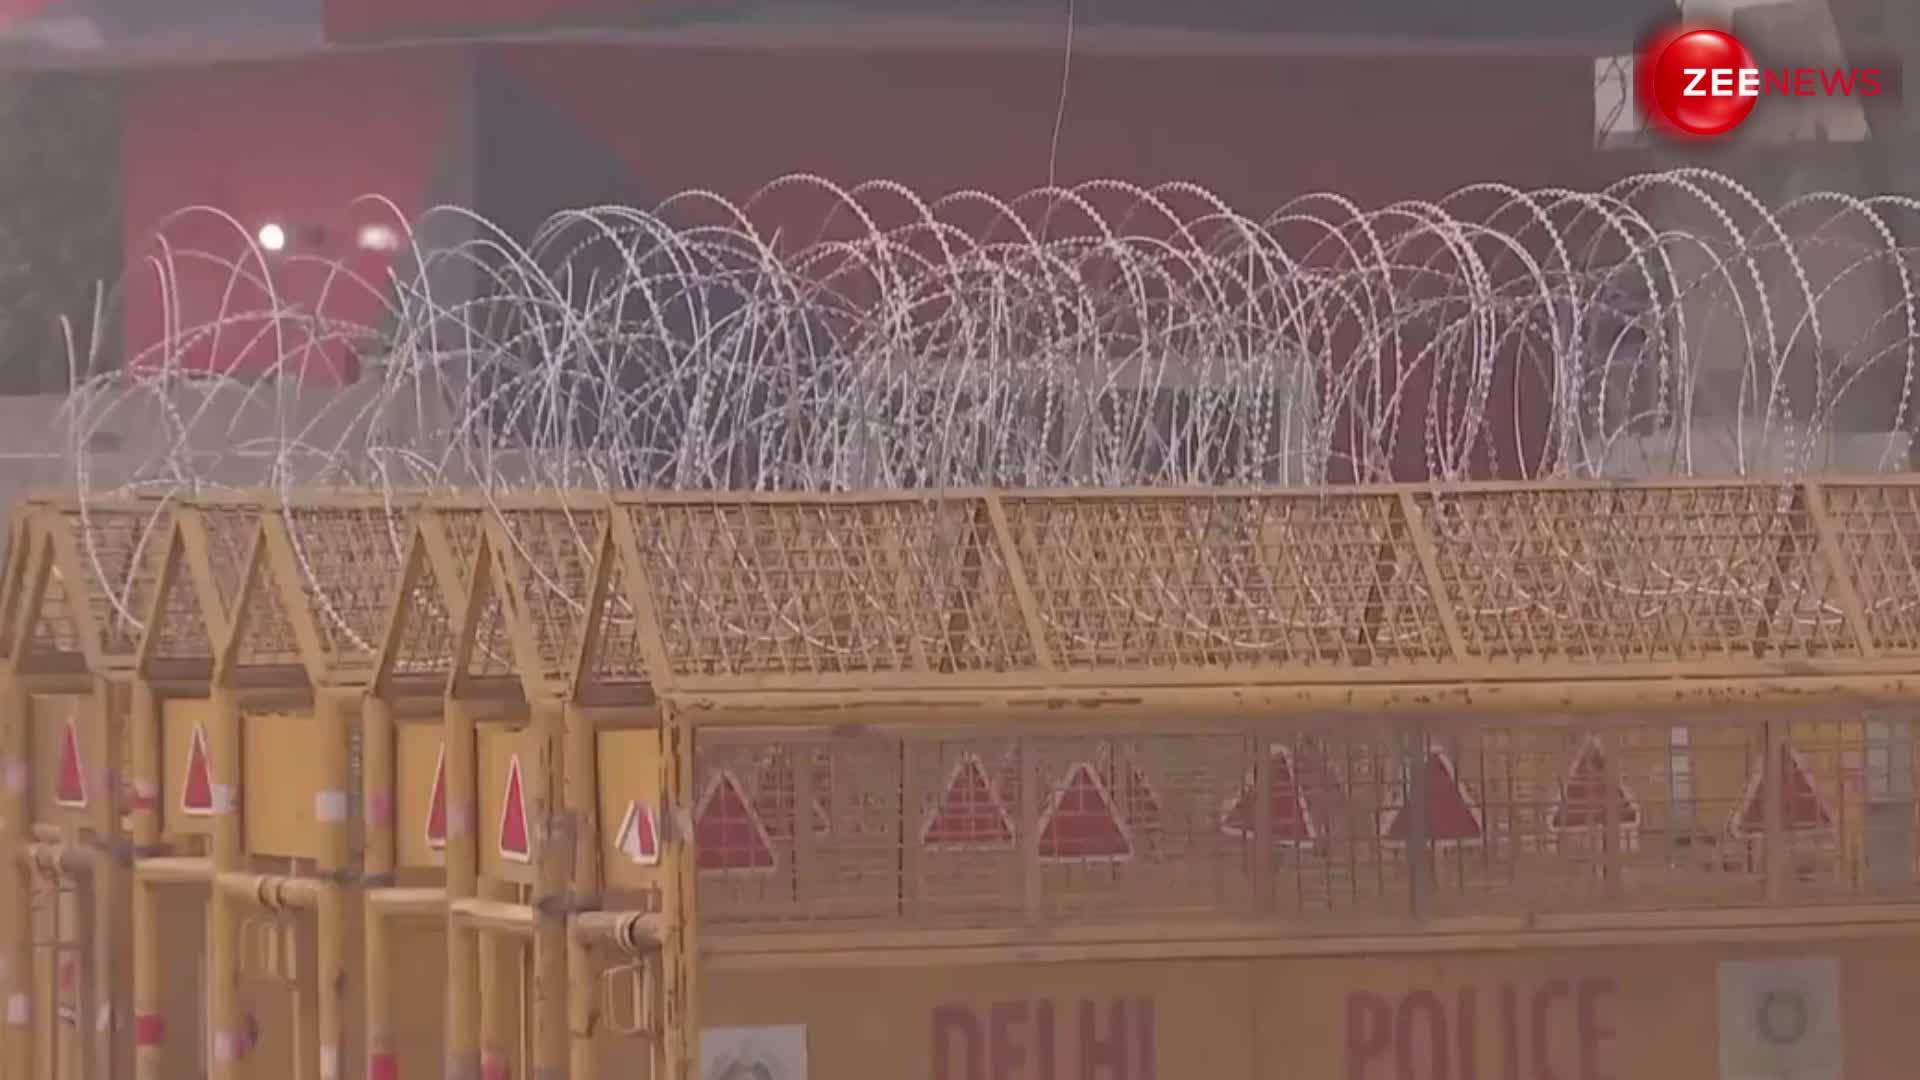 Farmer Protest: कटीली तारें और भारी बैरिकेडिंग के साथ राजधानी दिल्ली के बॉर्डर्स की हो रही सुरक्षा